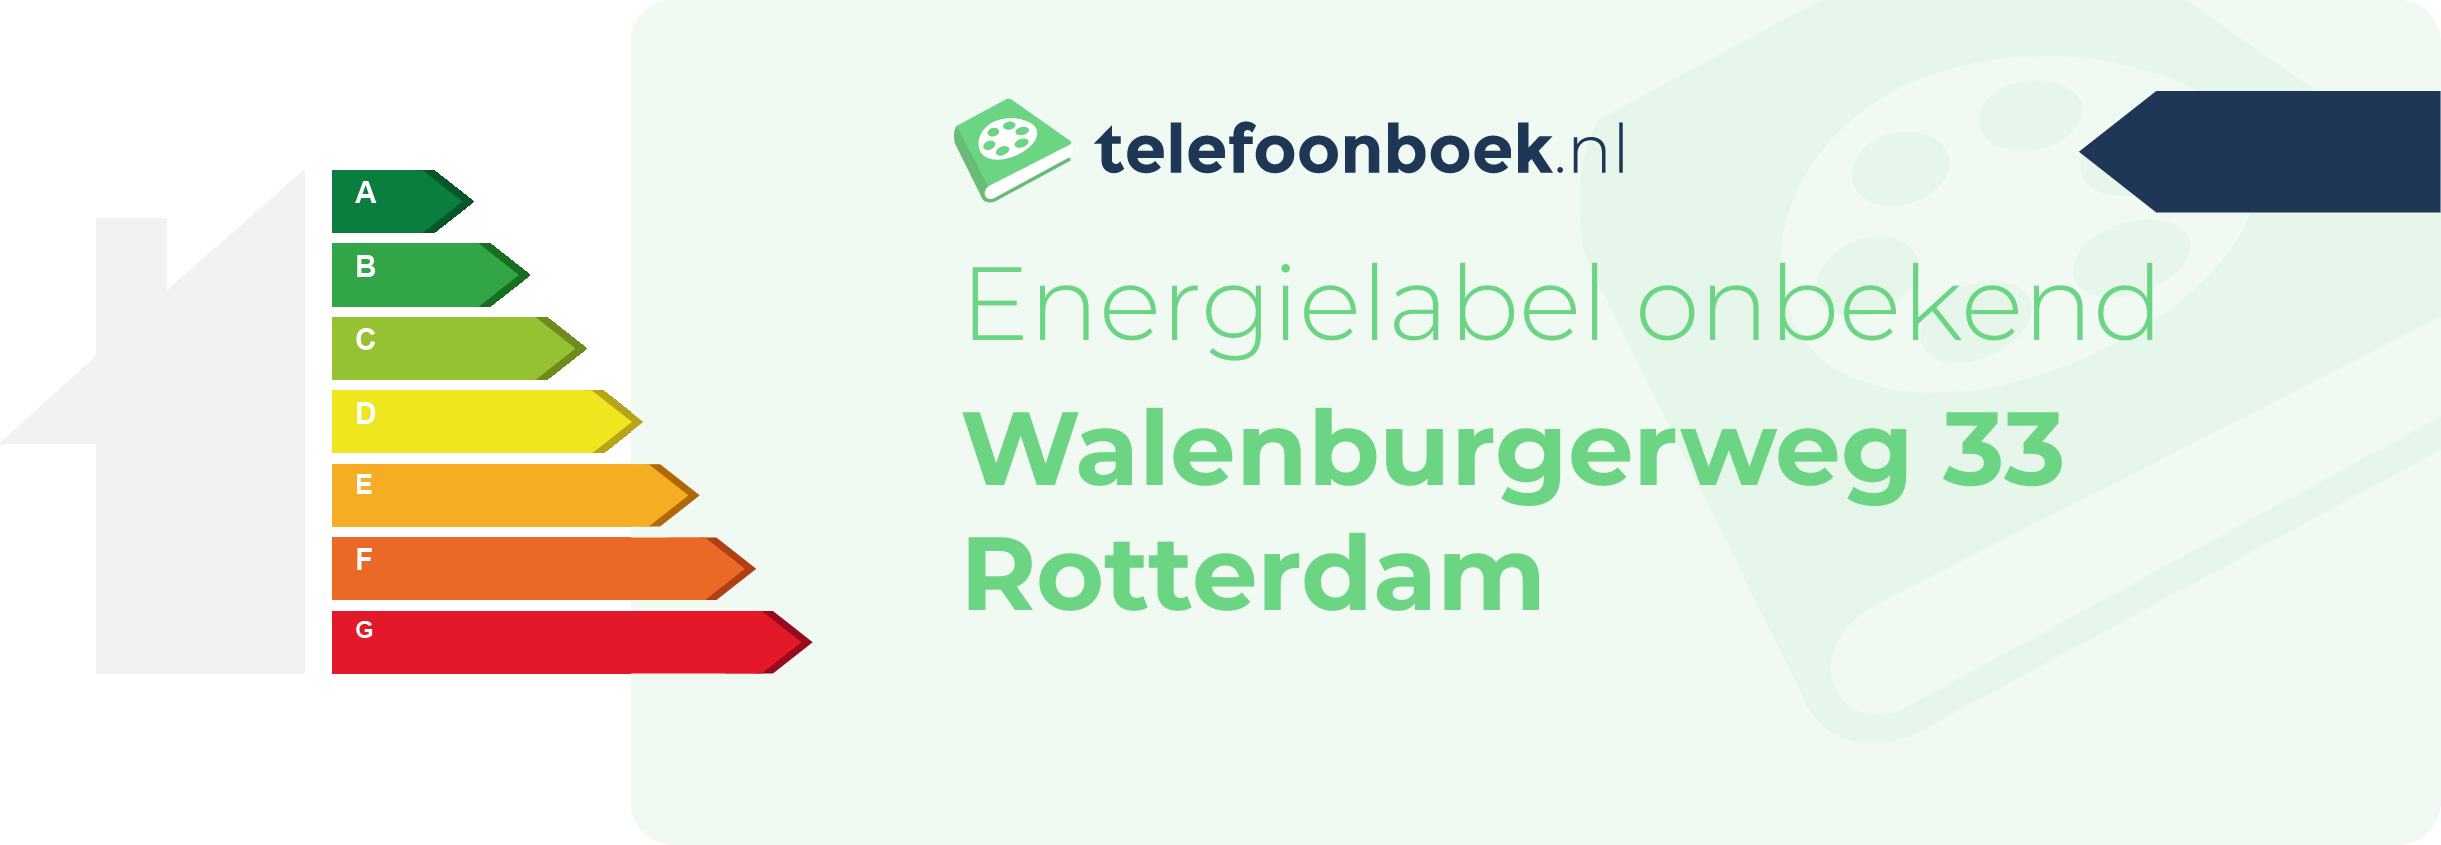 Energielabel Walenburgerweg 33 Rotterdam